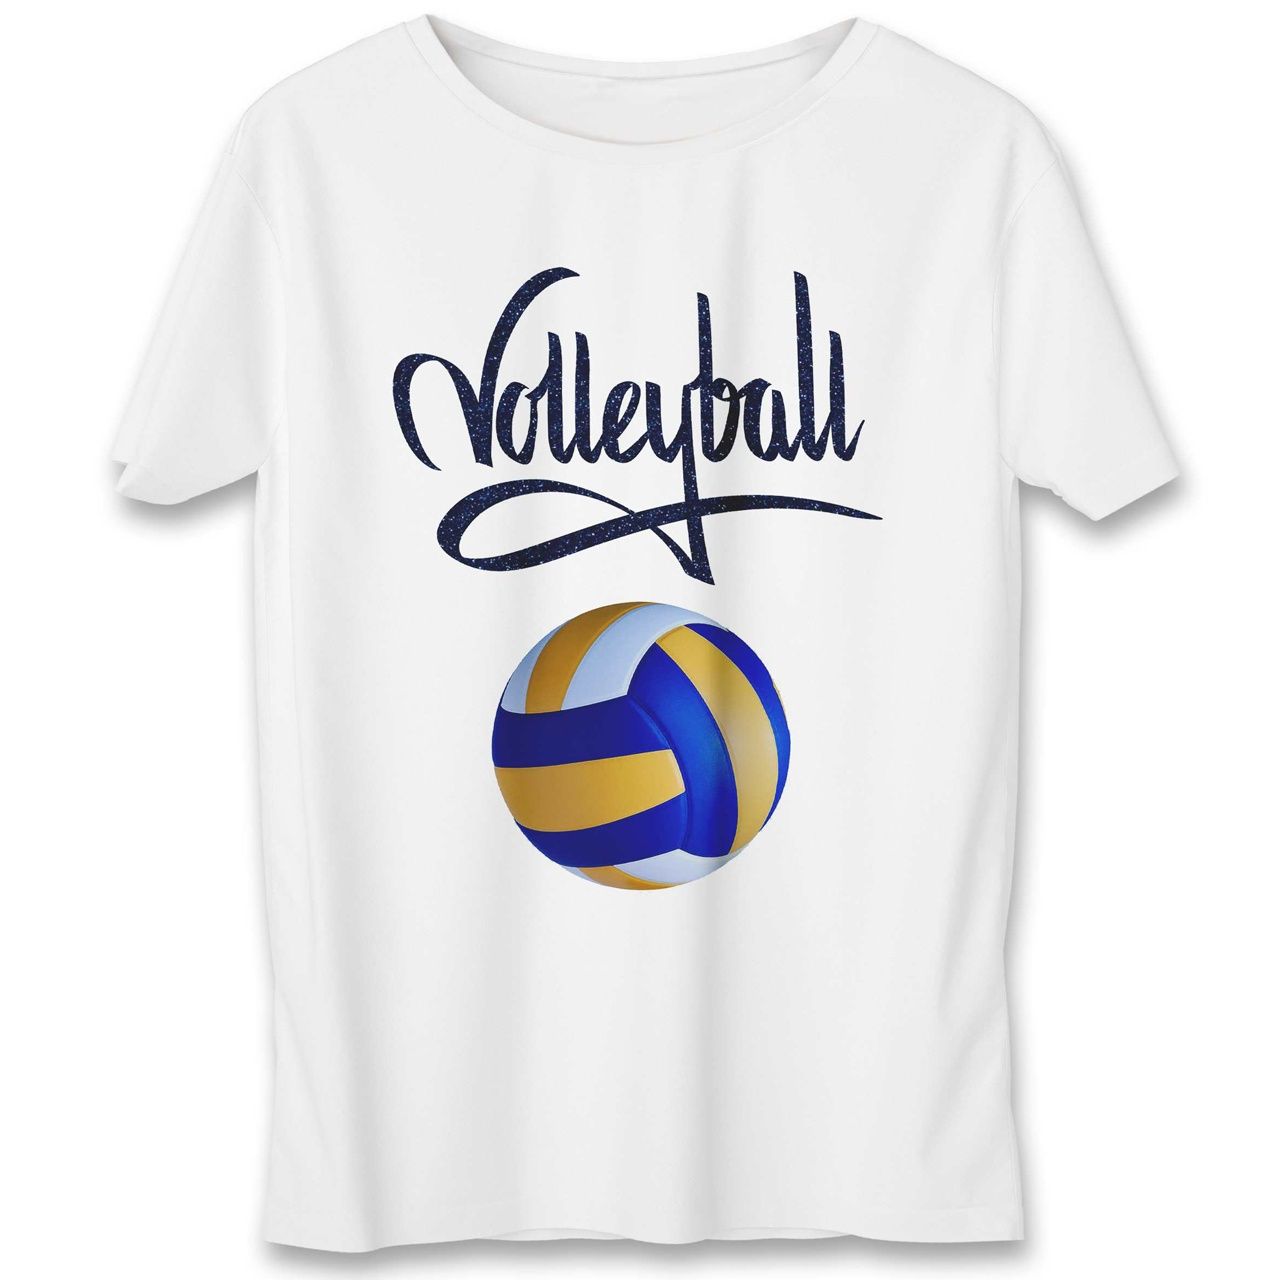 تی شرت به رسم طرح والیبال کد 542 -  - 1